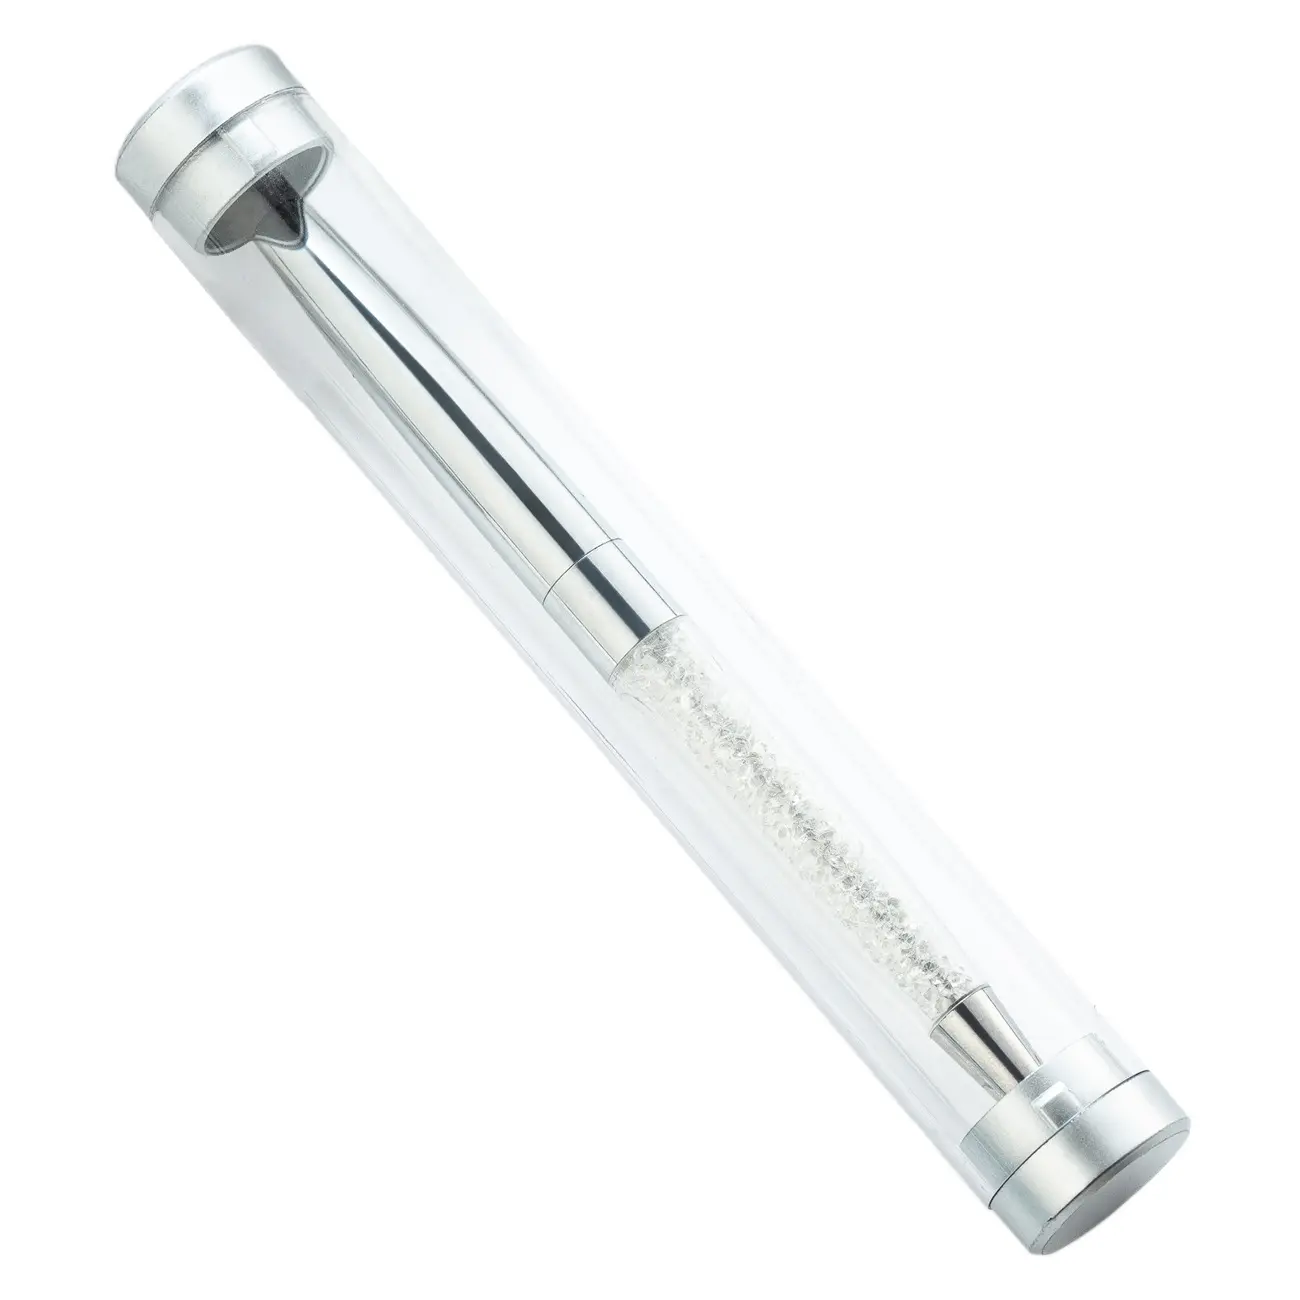 Nuevo barato y de buena calidad claro cilindro redondo pluma caja transparente tubo de embalaje caja de la pluma de